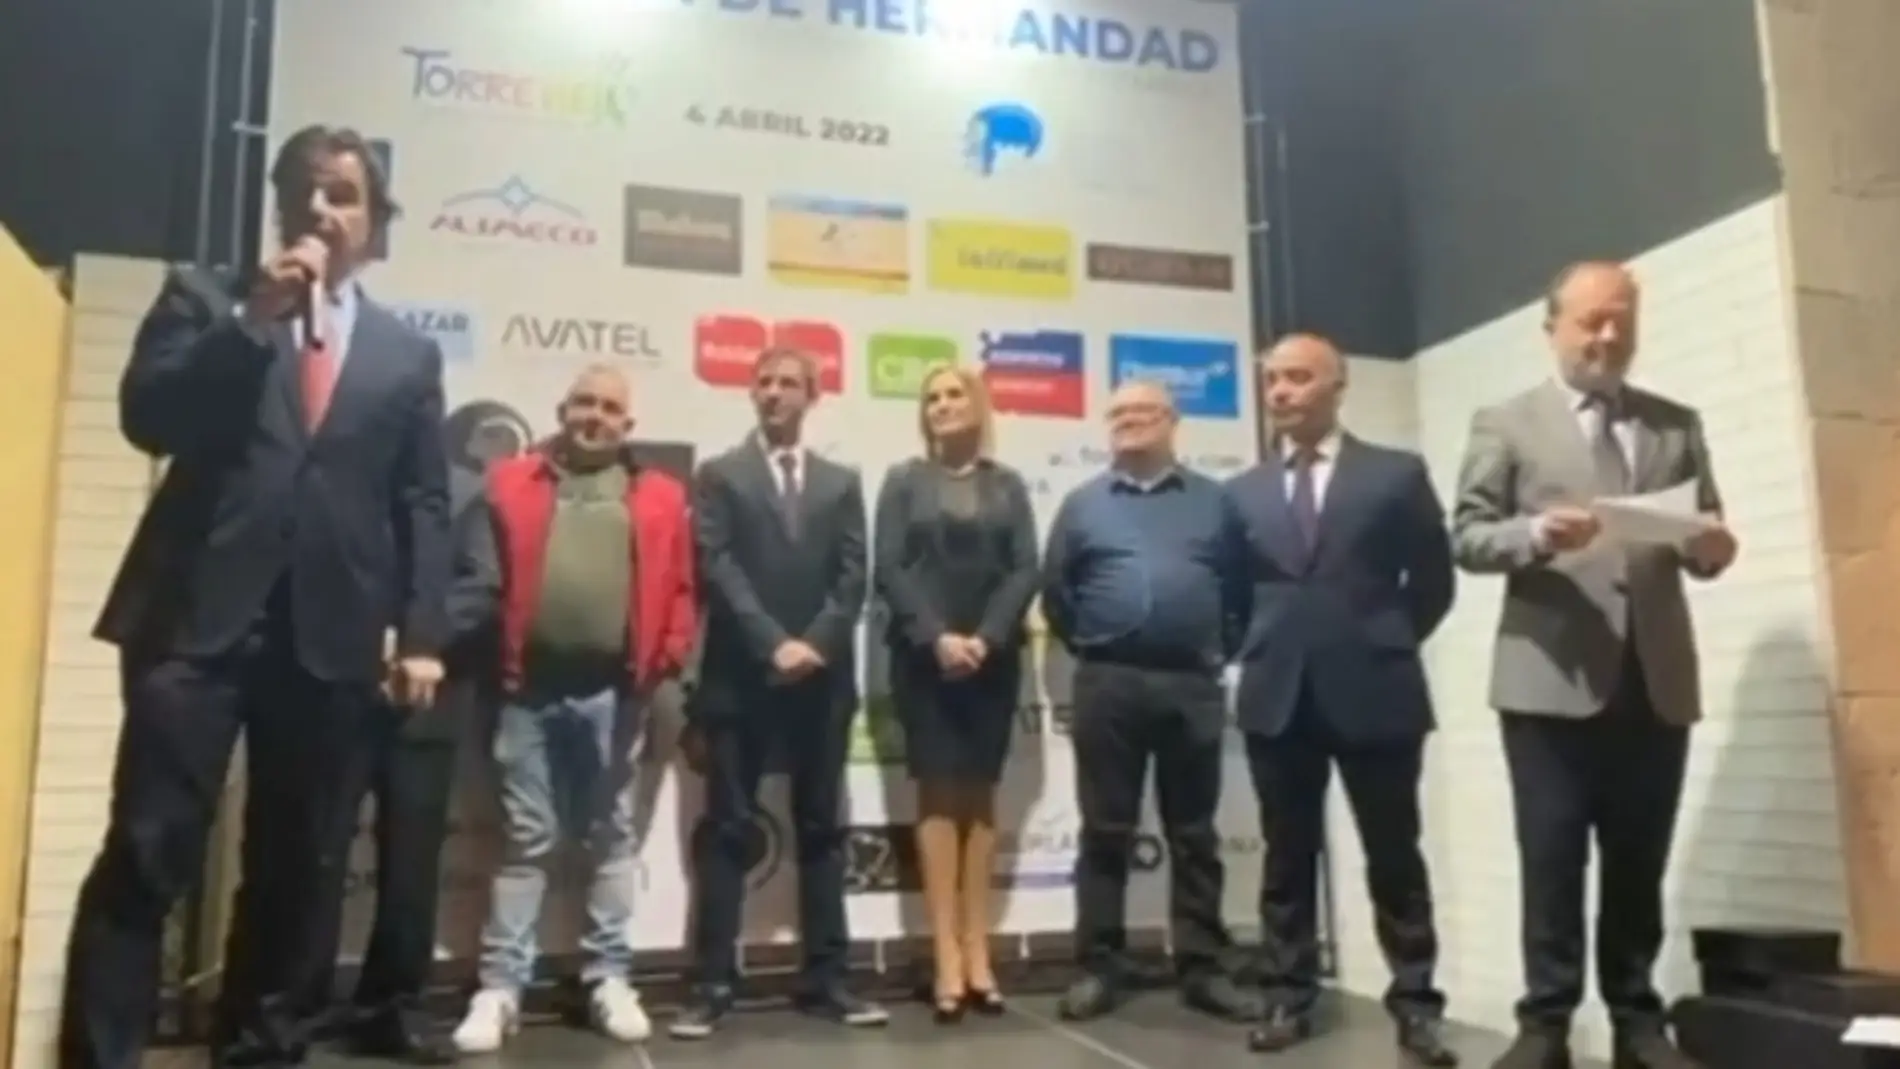 Intervención del alcalde de Torrevieja, Eduardo Dolón, en la entrega de los galardones 'Tenedores de Oro' de la hostelería